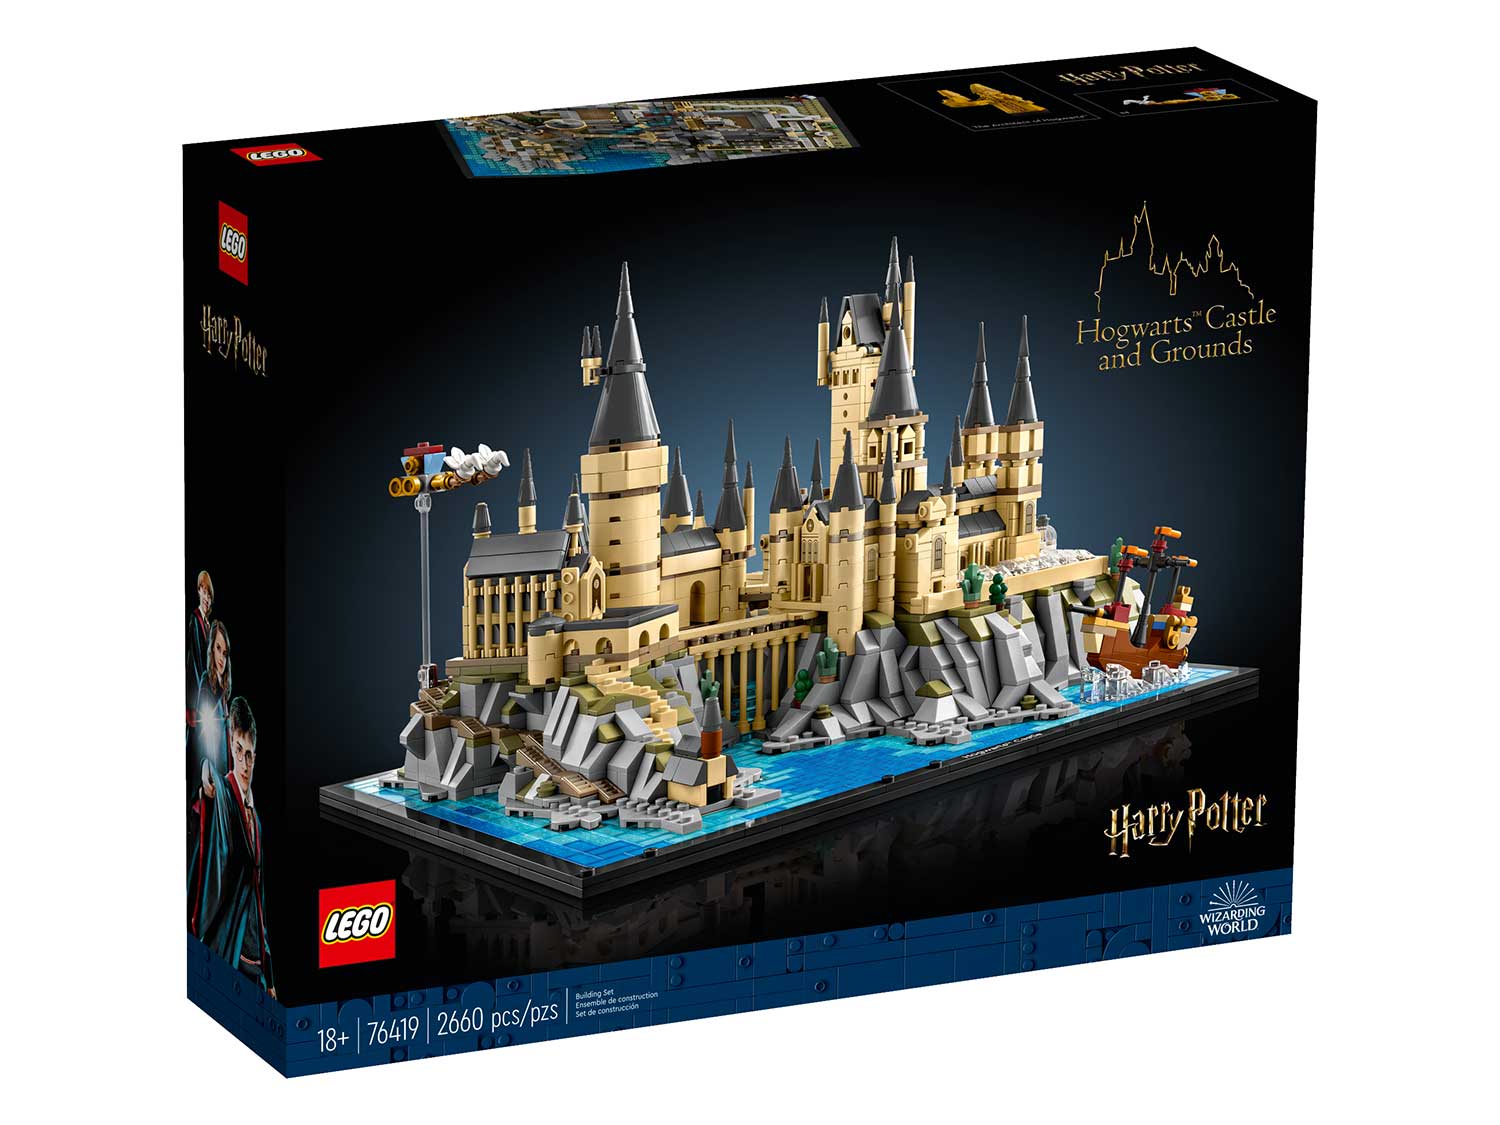 Конструктор Lego Harry Potter Hogwarts Castle and Grounds, 76419 конструктор lego harry potter 75978 косой переулок